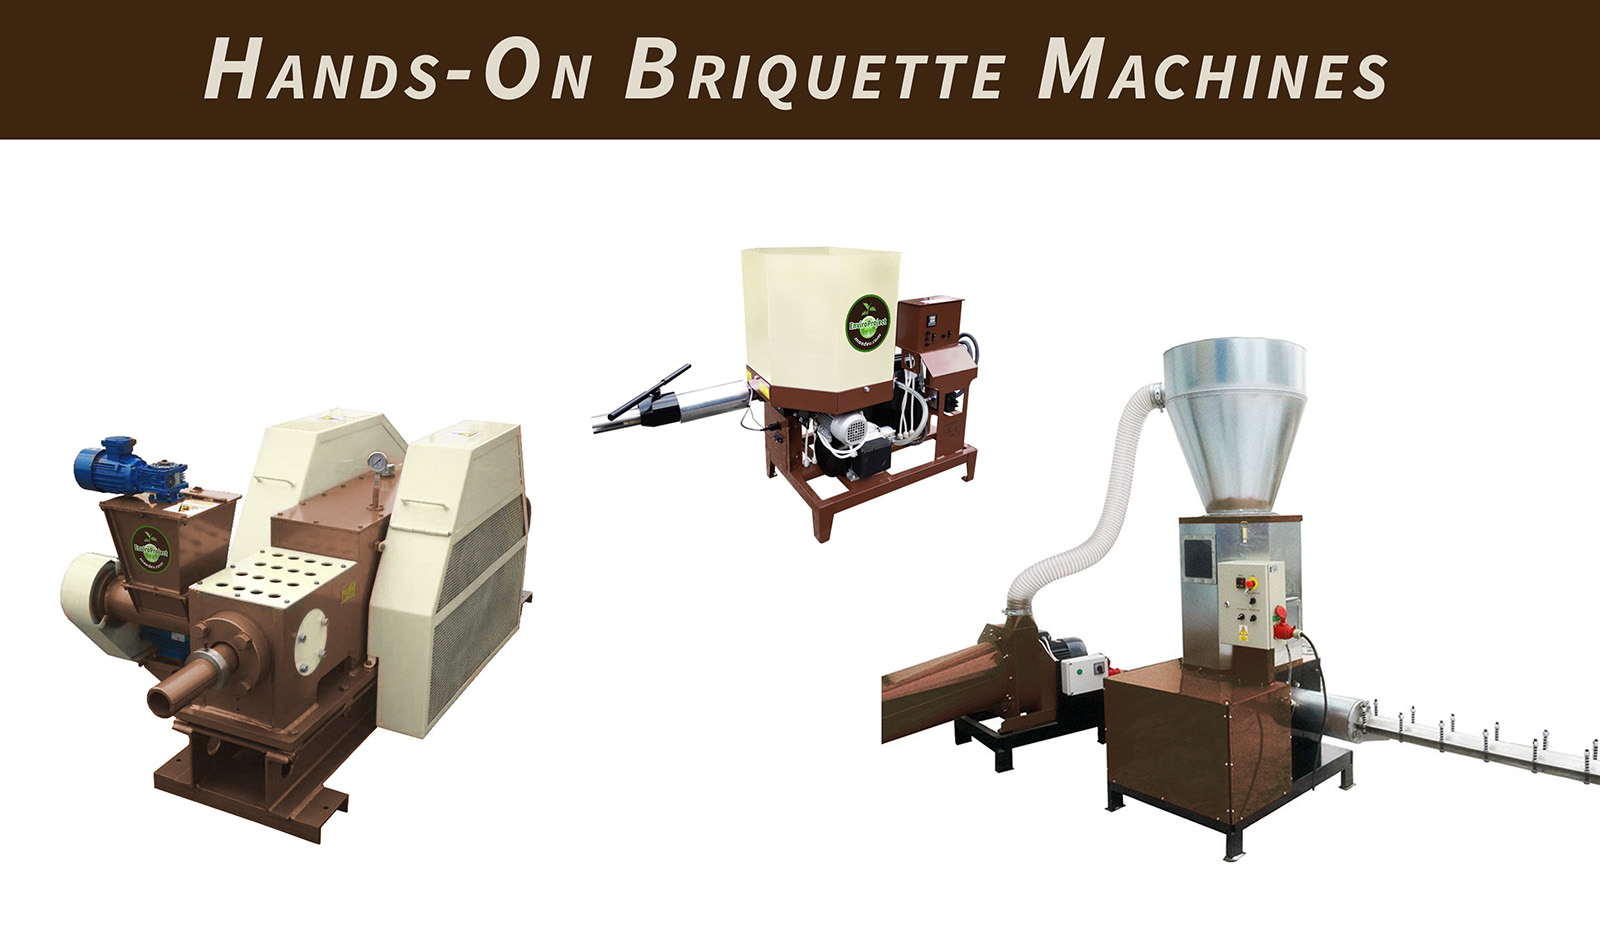 Hands-on briquette machines briquette makers uk